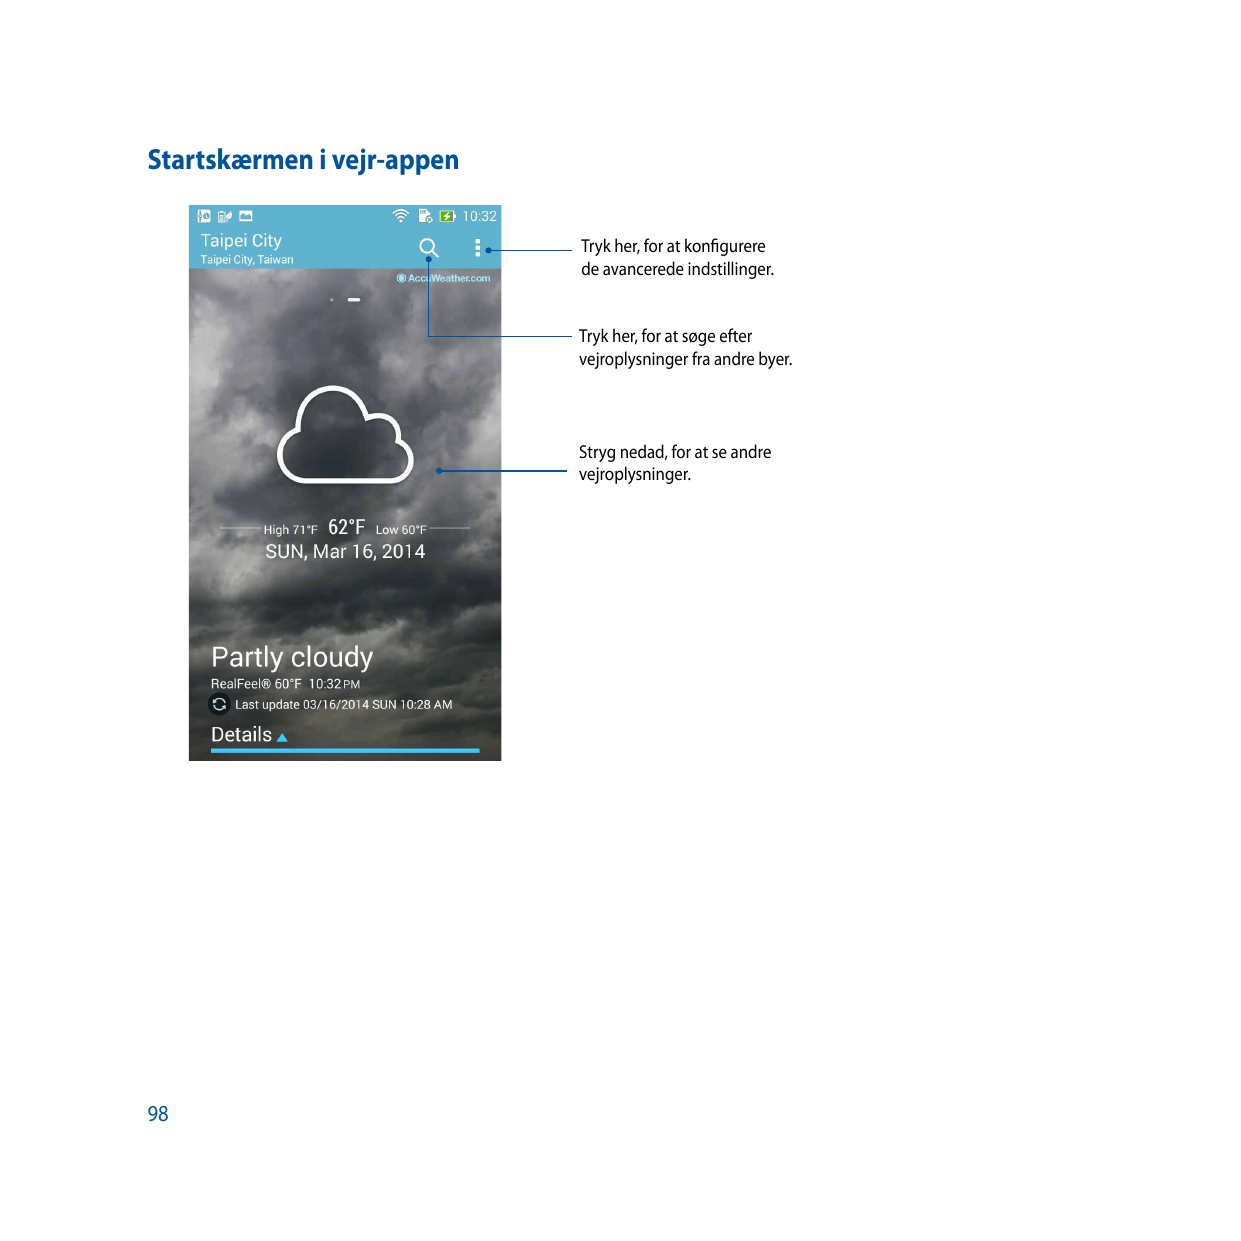 Startskærmen i vejr-appenTryk her, for at konfigurerede avancerede indstillinger.Tryk her, for at søge eftervejroplysninger fra 